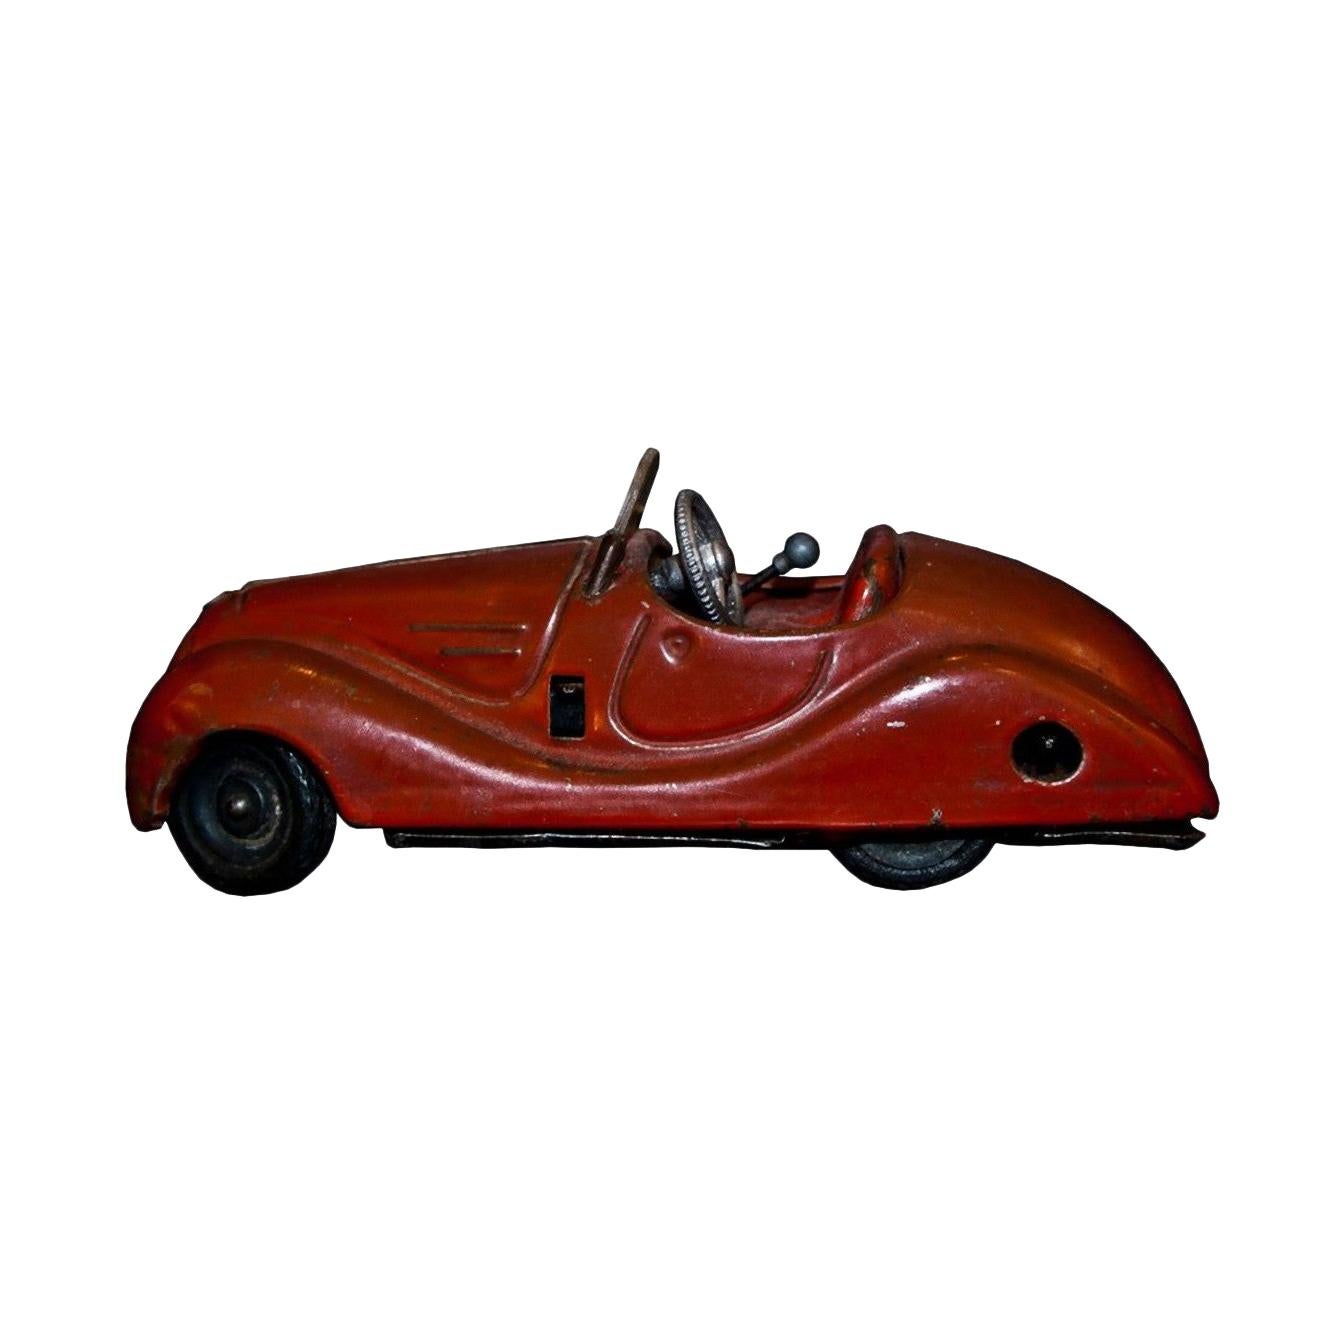 Vintage Toy, Schuco Examico 4001 Car, 1950s For Sale